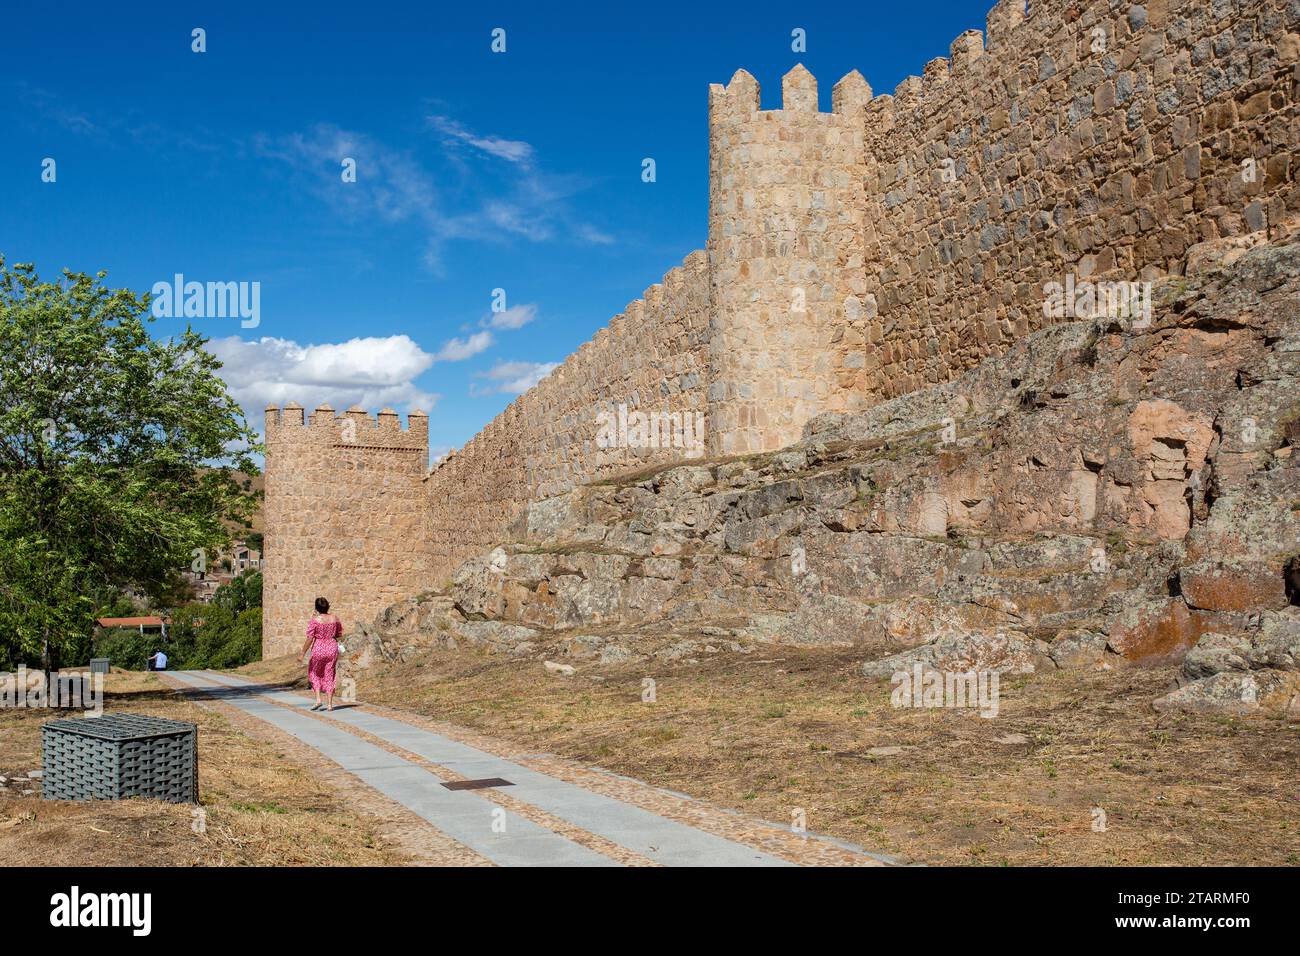 Donna che cammina accanto al bastione e alle fortificazioni nella città fortificata spagnola di Avila, nella comunità autonoma di Castiglia e León Spagna Foto Stock